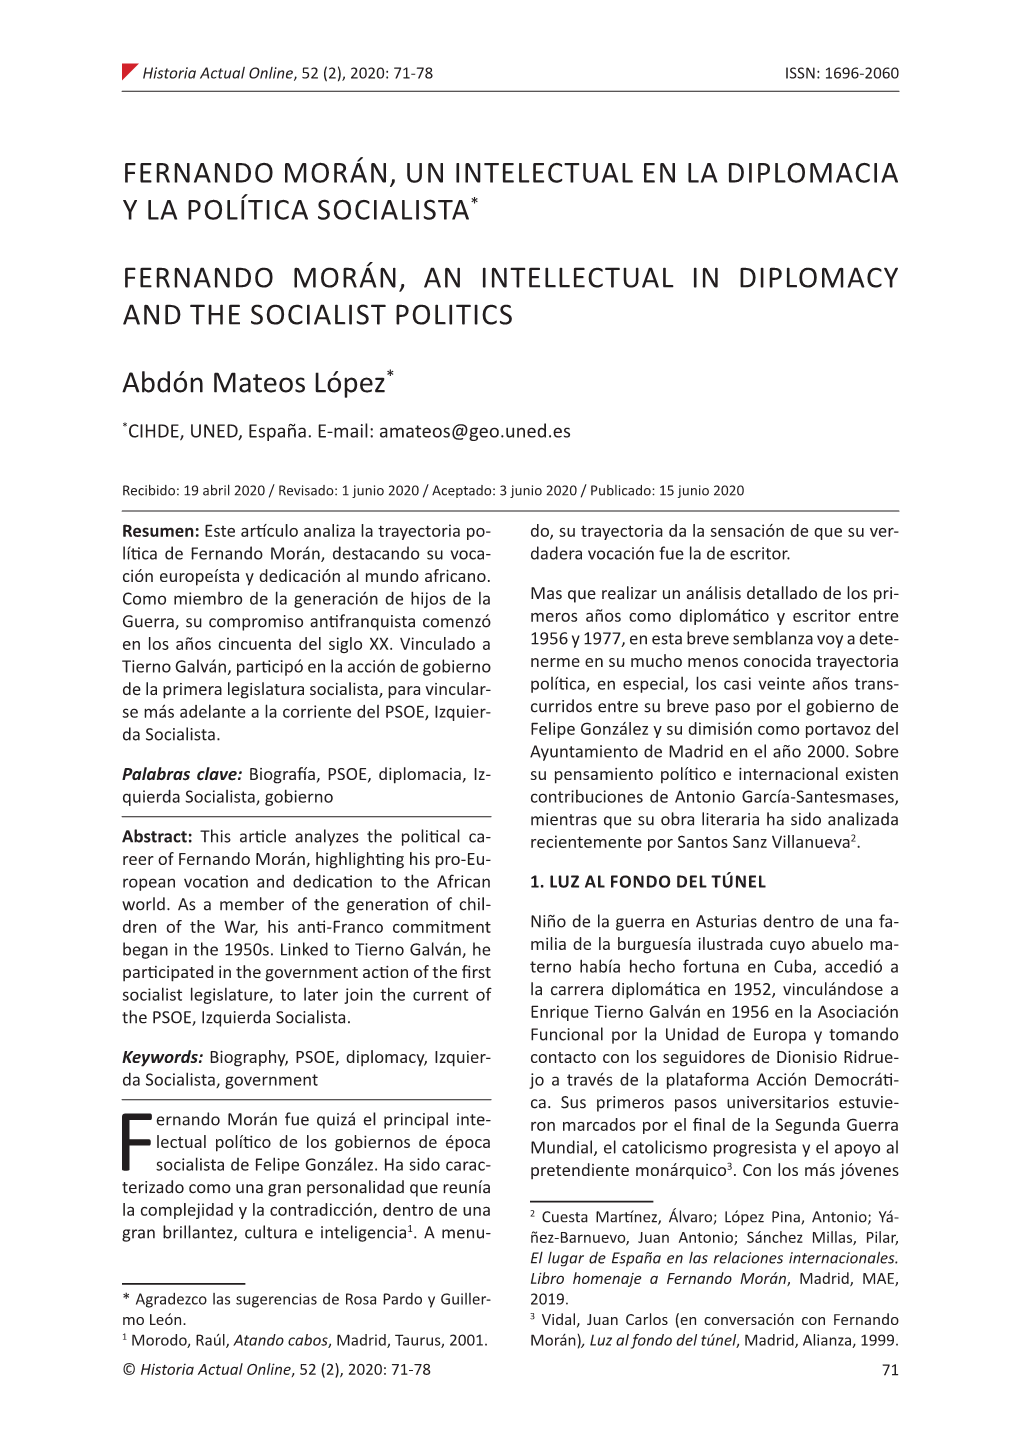 Fernando Morán, Un Intelectual En La Diplomacia Y La